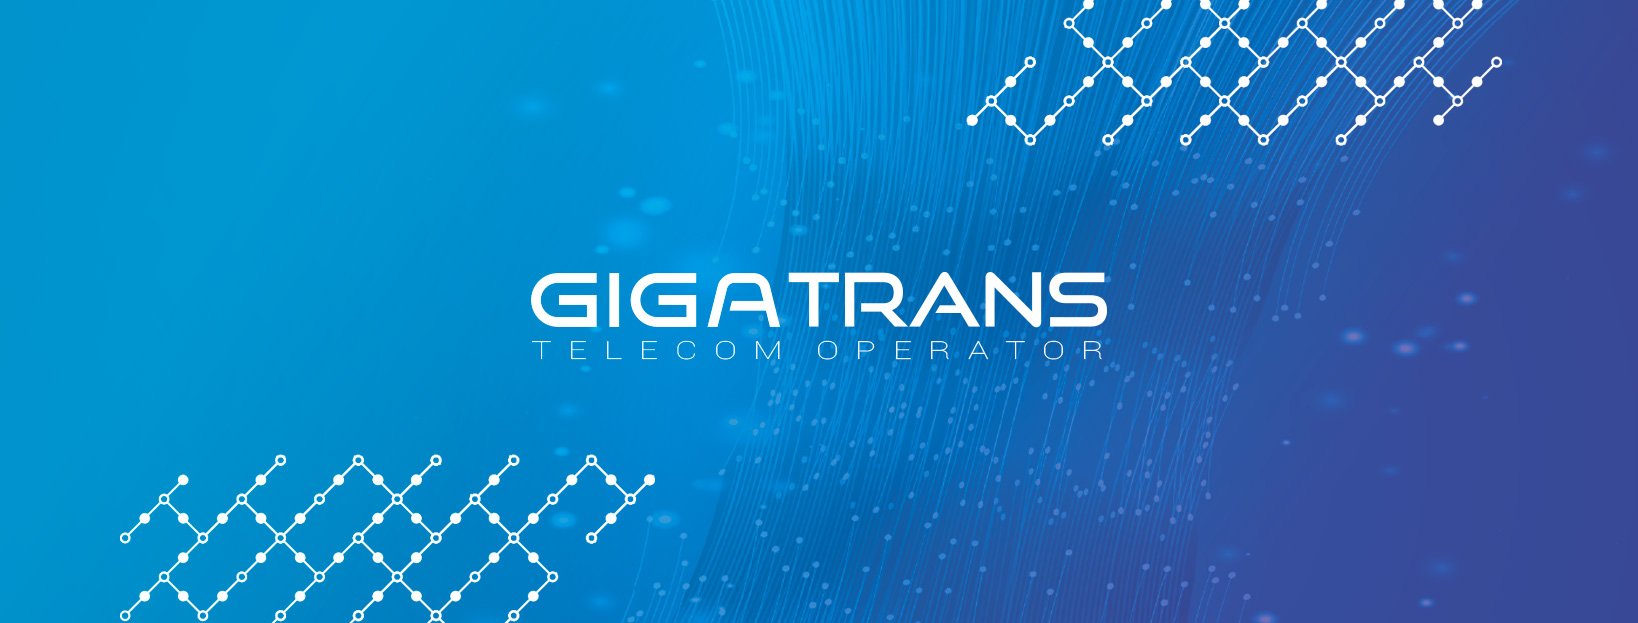 Оголошення від команди GigaTrans